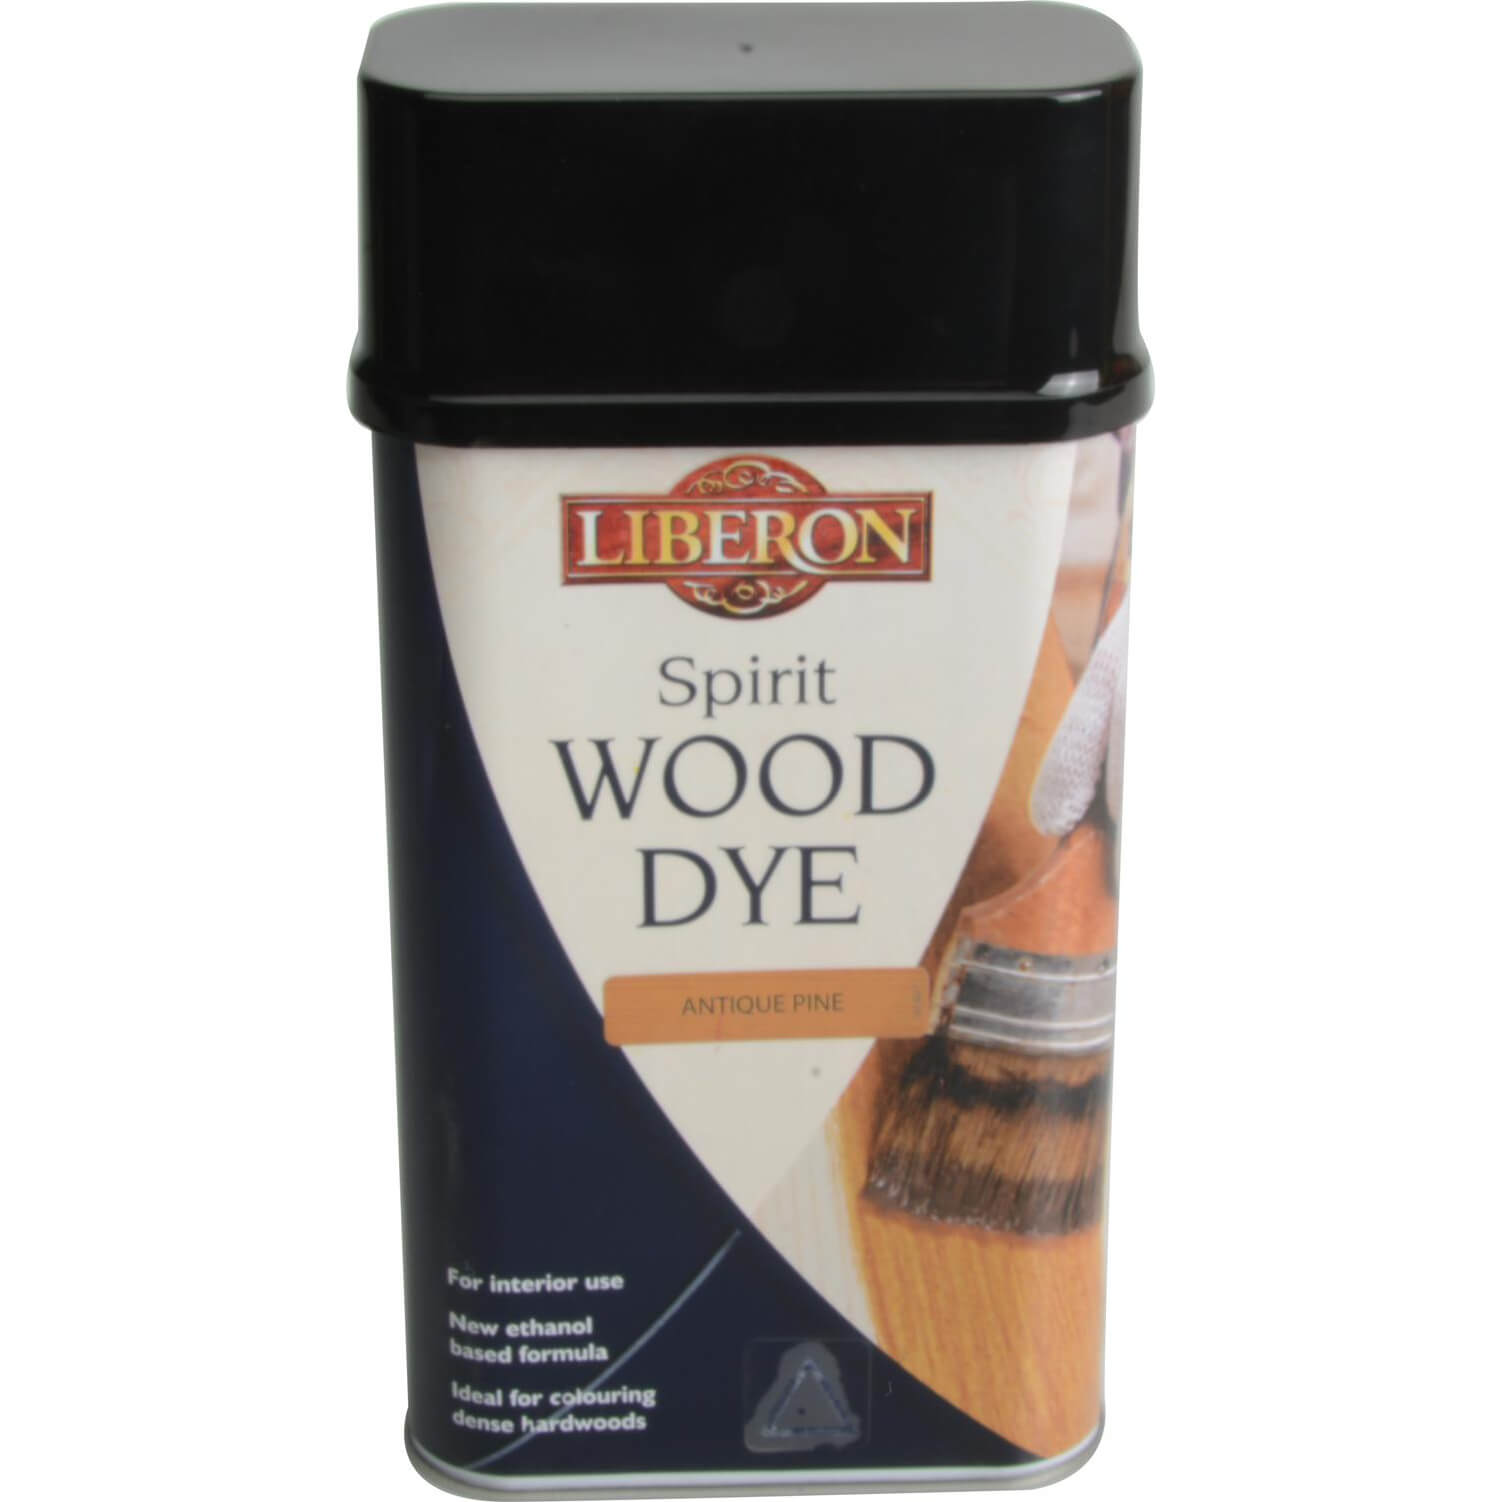 Image of Liberon Spirit Wood Dye Antique Pine 1l